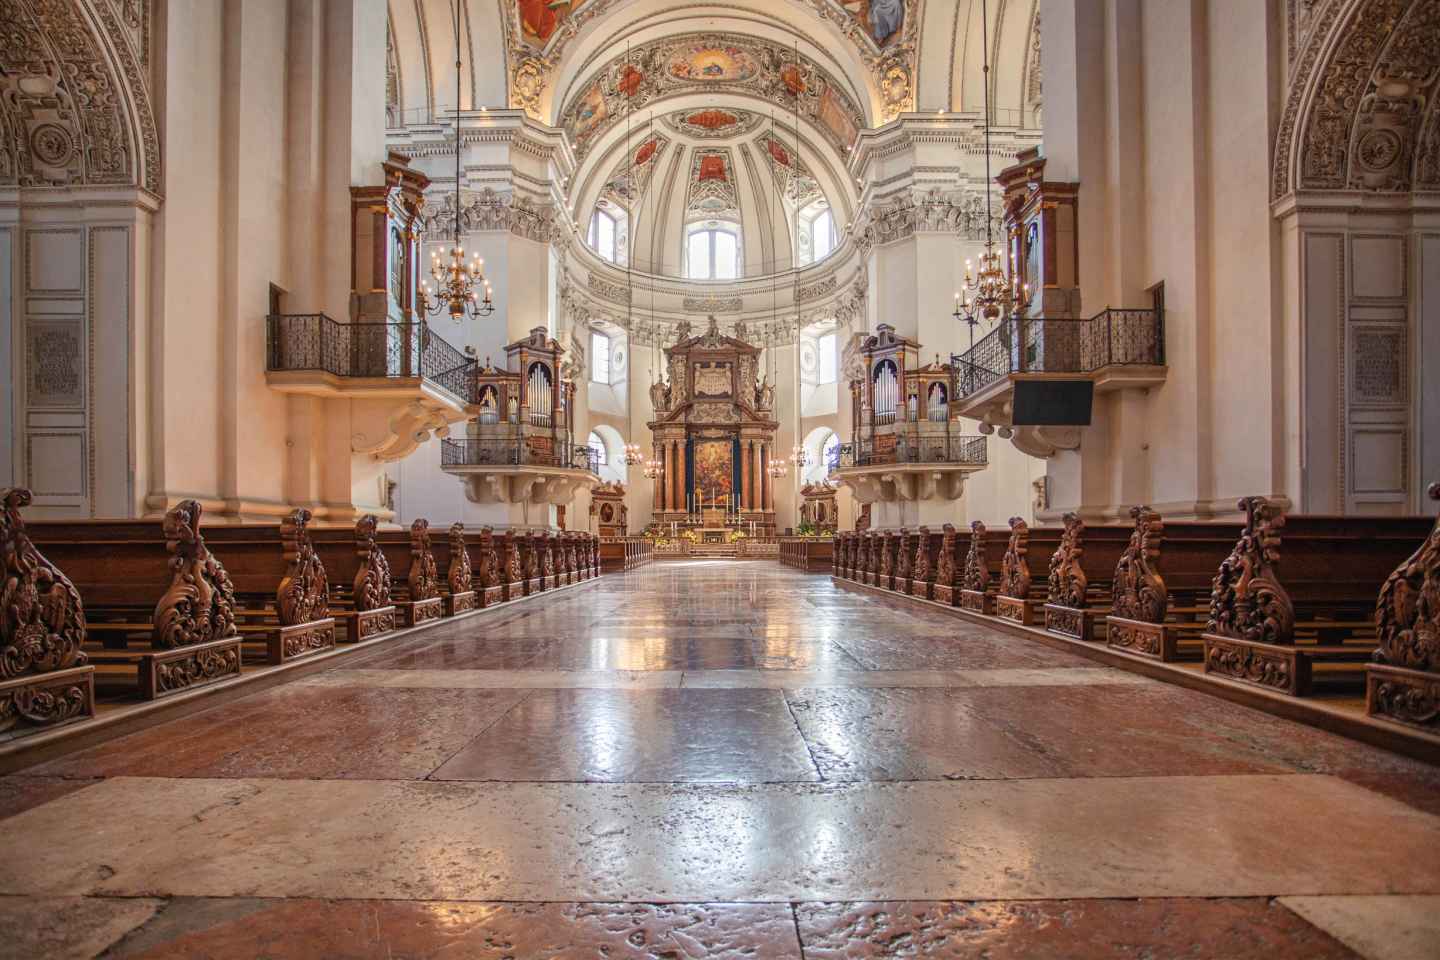 Dom zu Salzburg: Orgelkonzert zur Mittagszeit